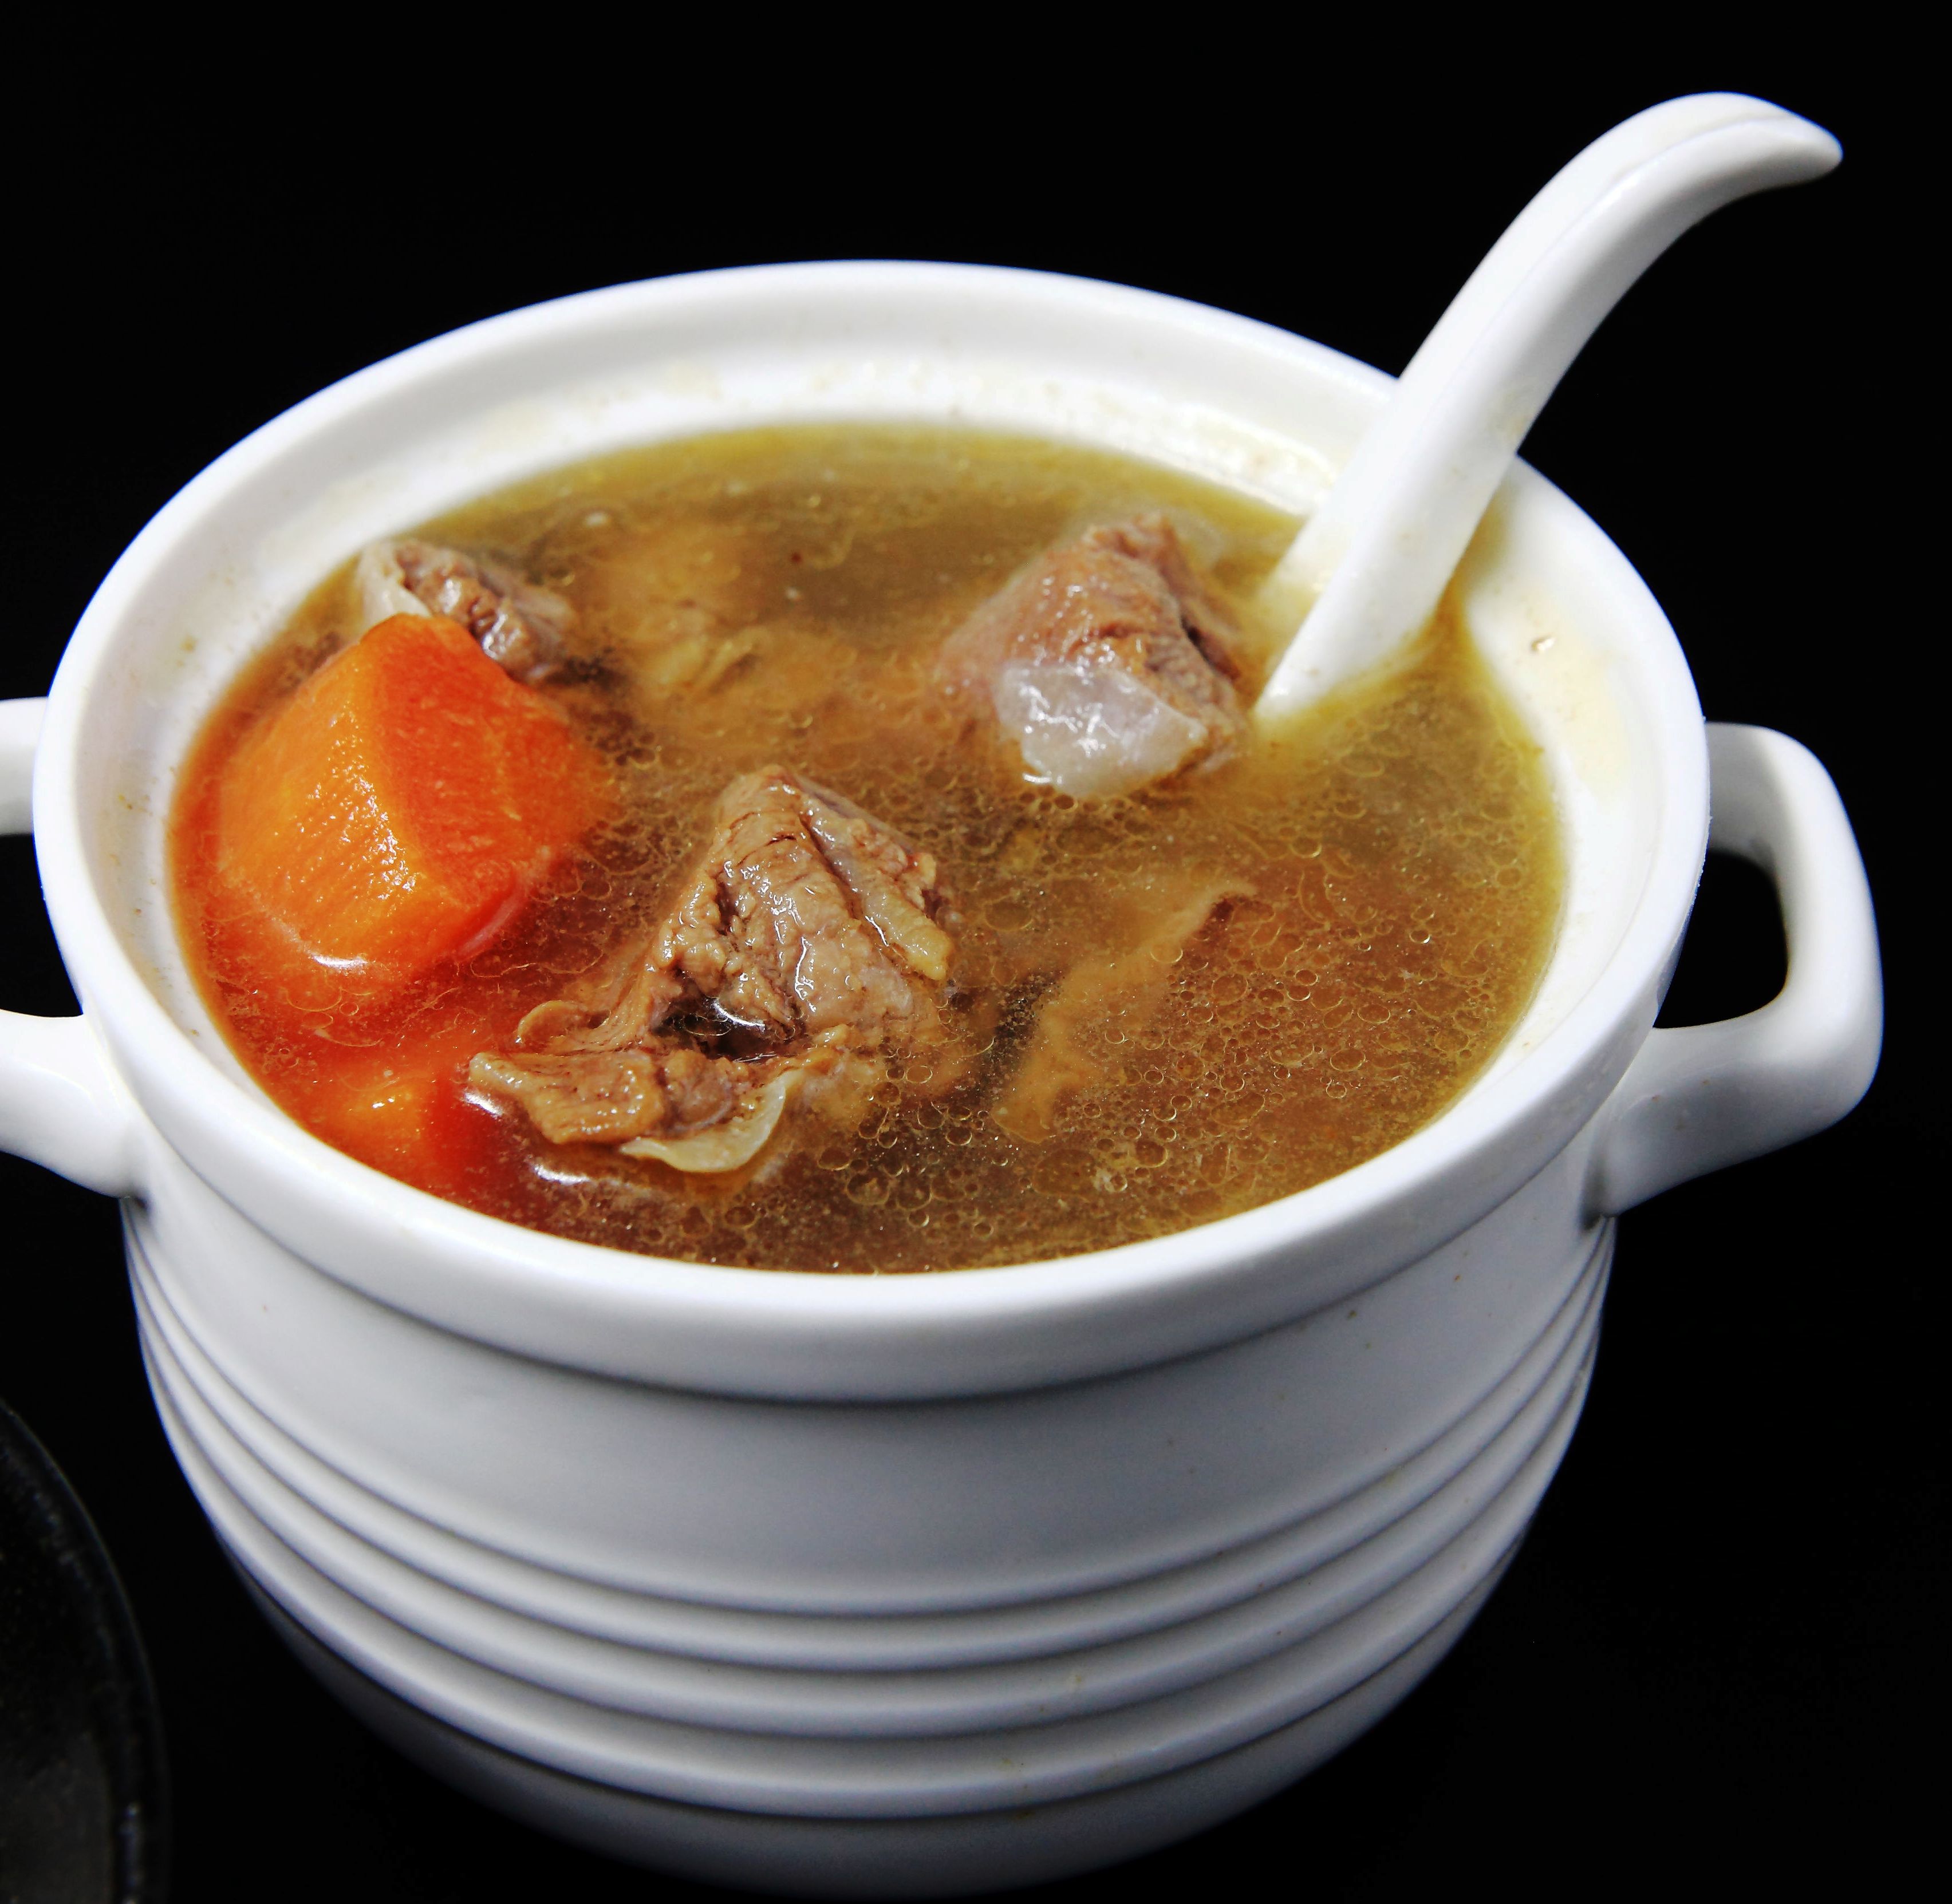 清爽慢炖牛肉汤 (600g)【龙冈圆环】 养生汤品 每滴高汤都富含牛肉的